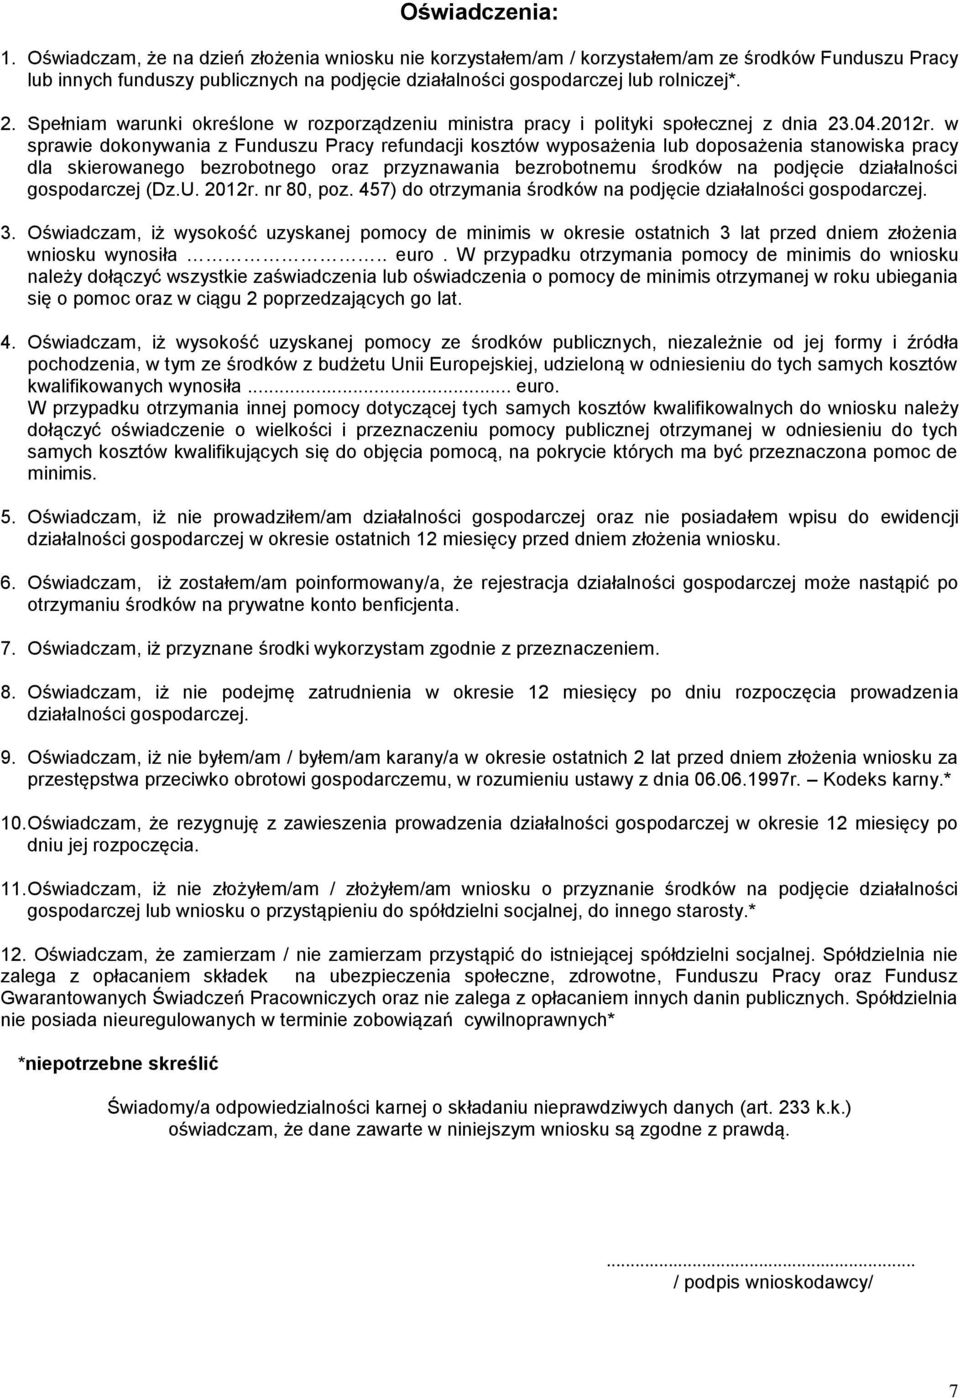 Spełniam warunki określone w rozporządzeniu ministra pracy i polityki społecznej z dnia 23.04.2012r.